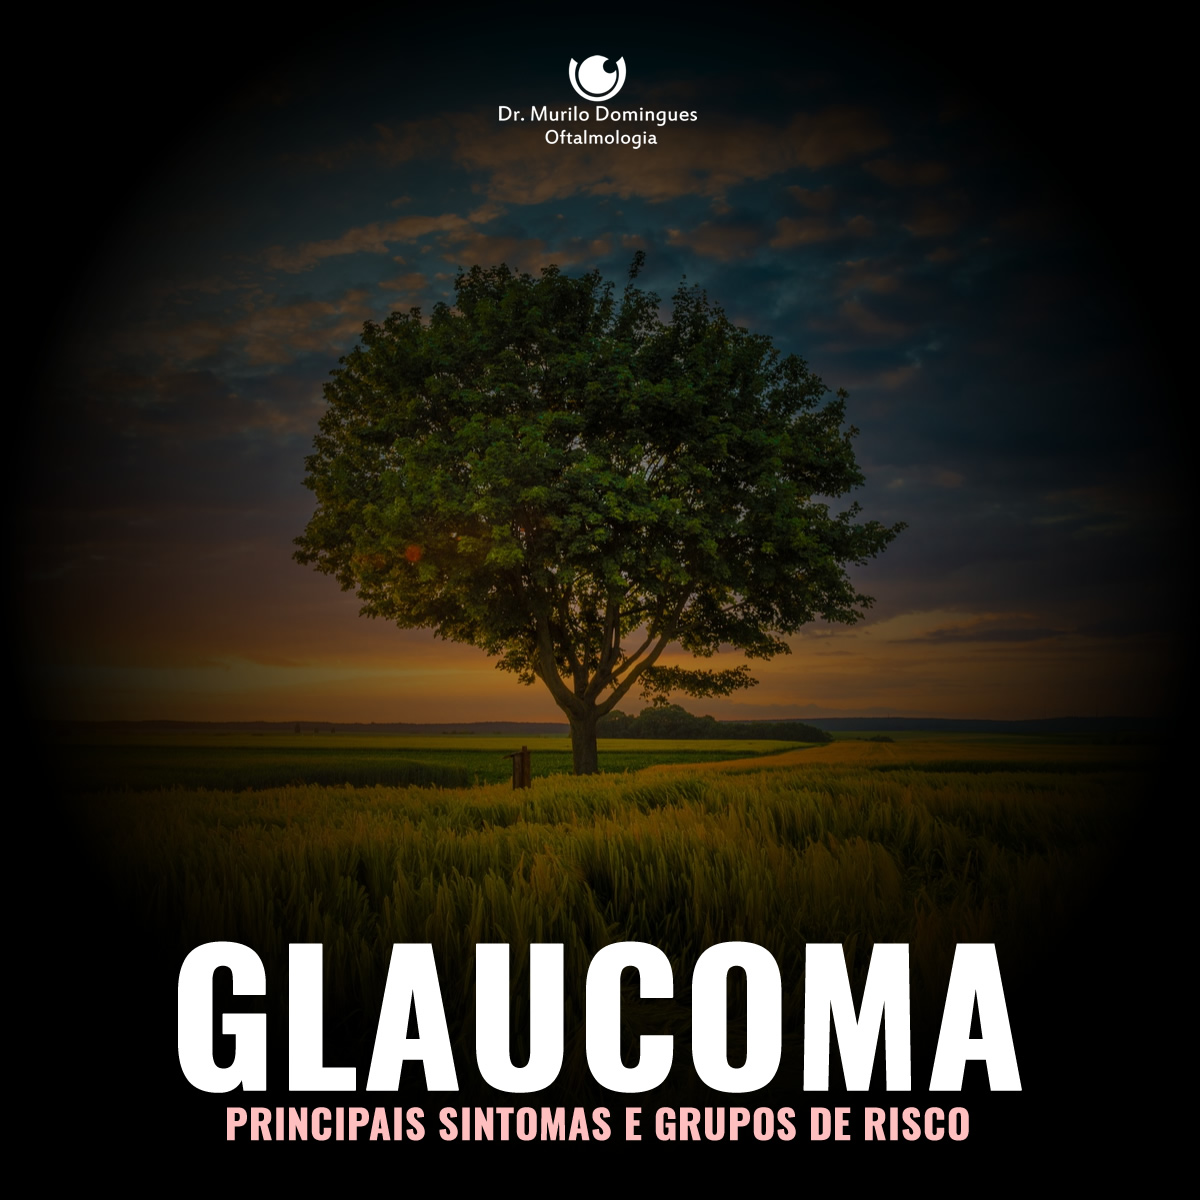 Tratamento do Glaucoma em Curitiba Principais sintomas e grupos de risco